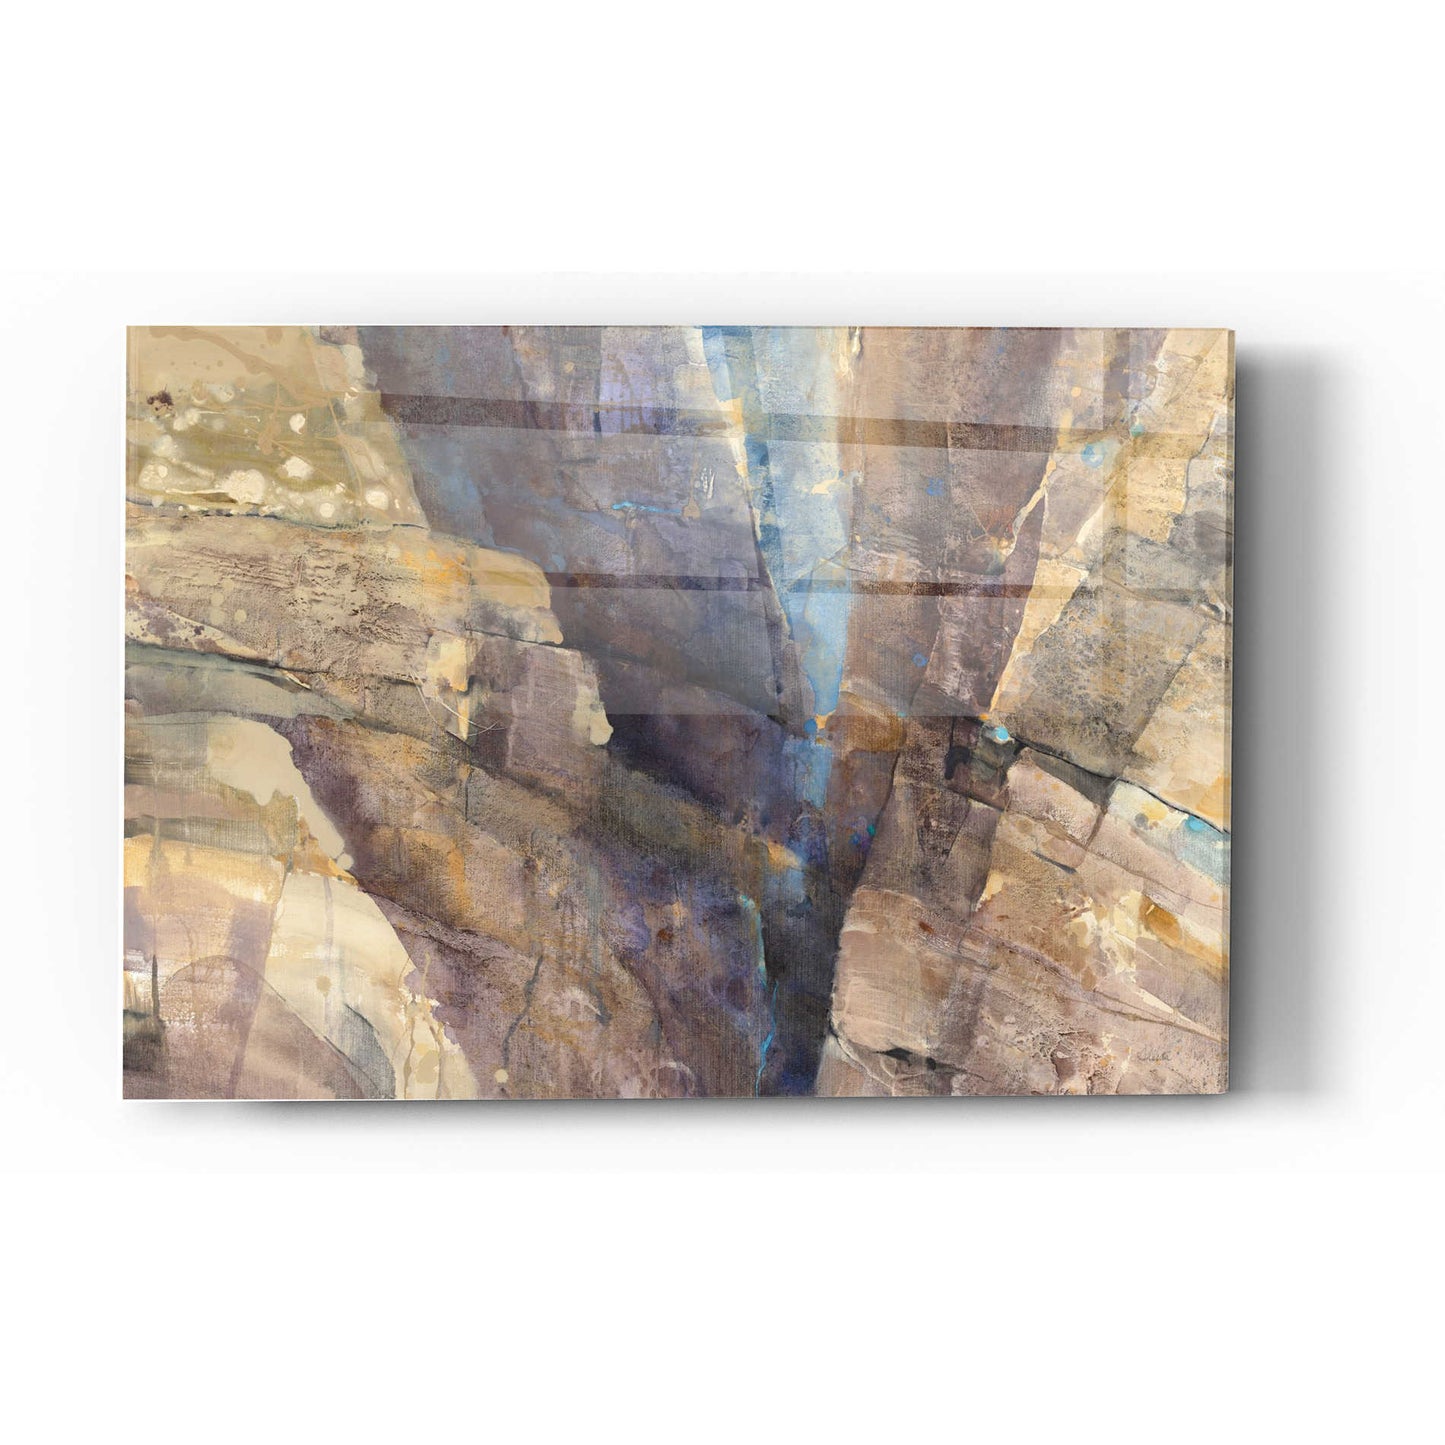 Epic Art 'Canyon II' by Albena Hristova, Acrylic Glass Wall Art,16x24